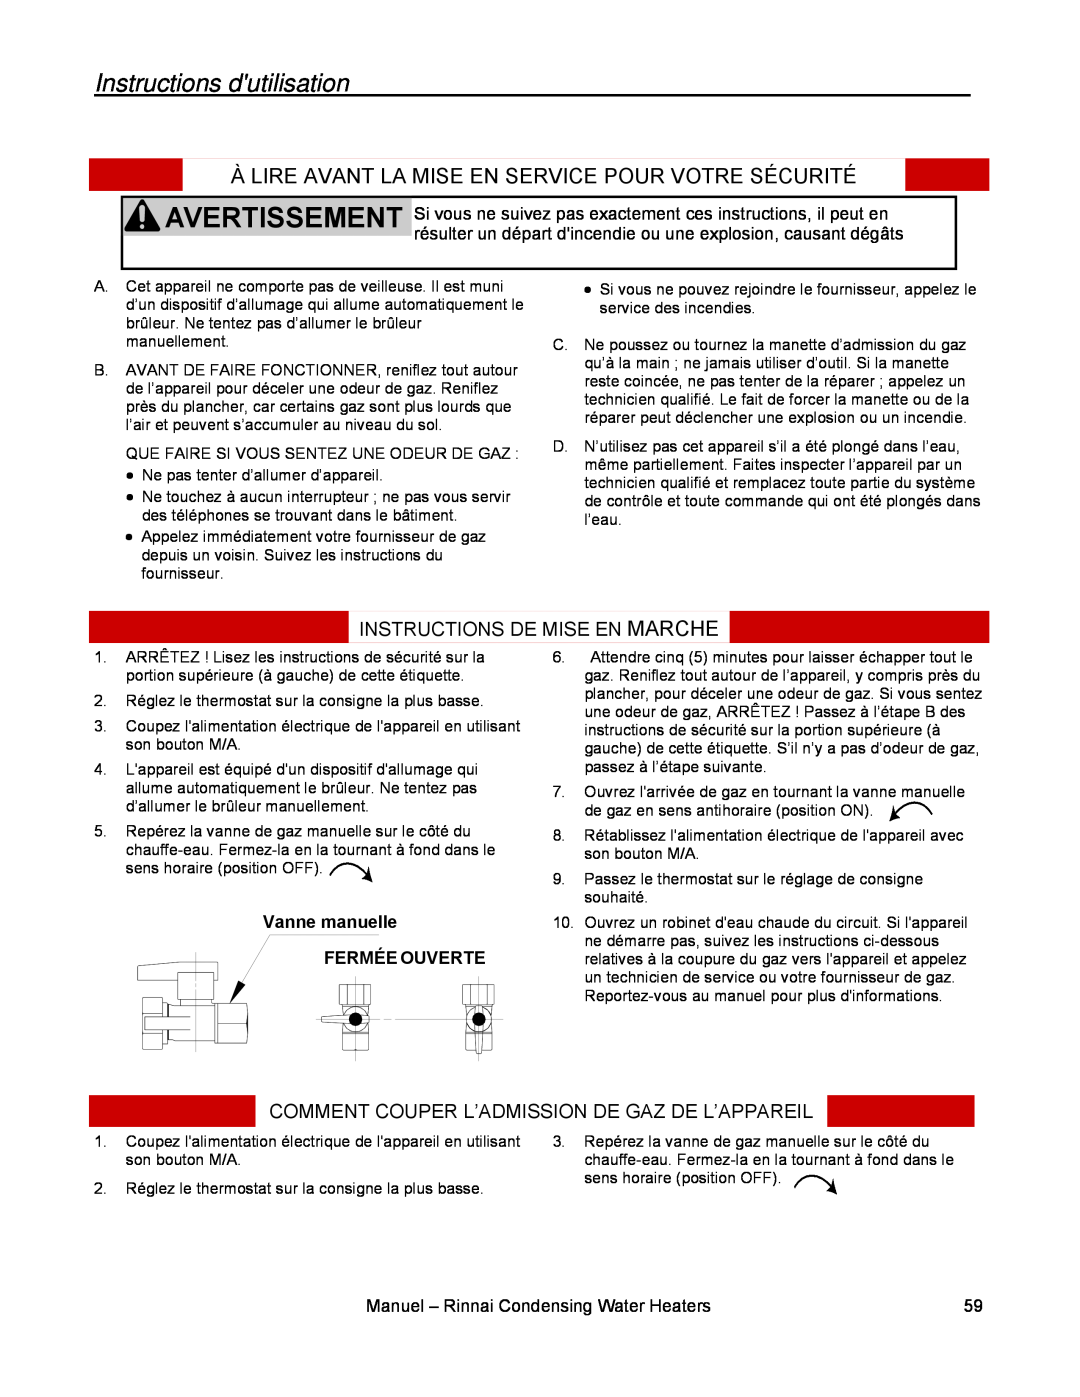 Rinnai RC80E Instructions dutilisation, Instructions De Mise En Marche, Comment Couper L’Admission De Gaz De L’Appareil 